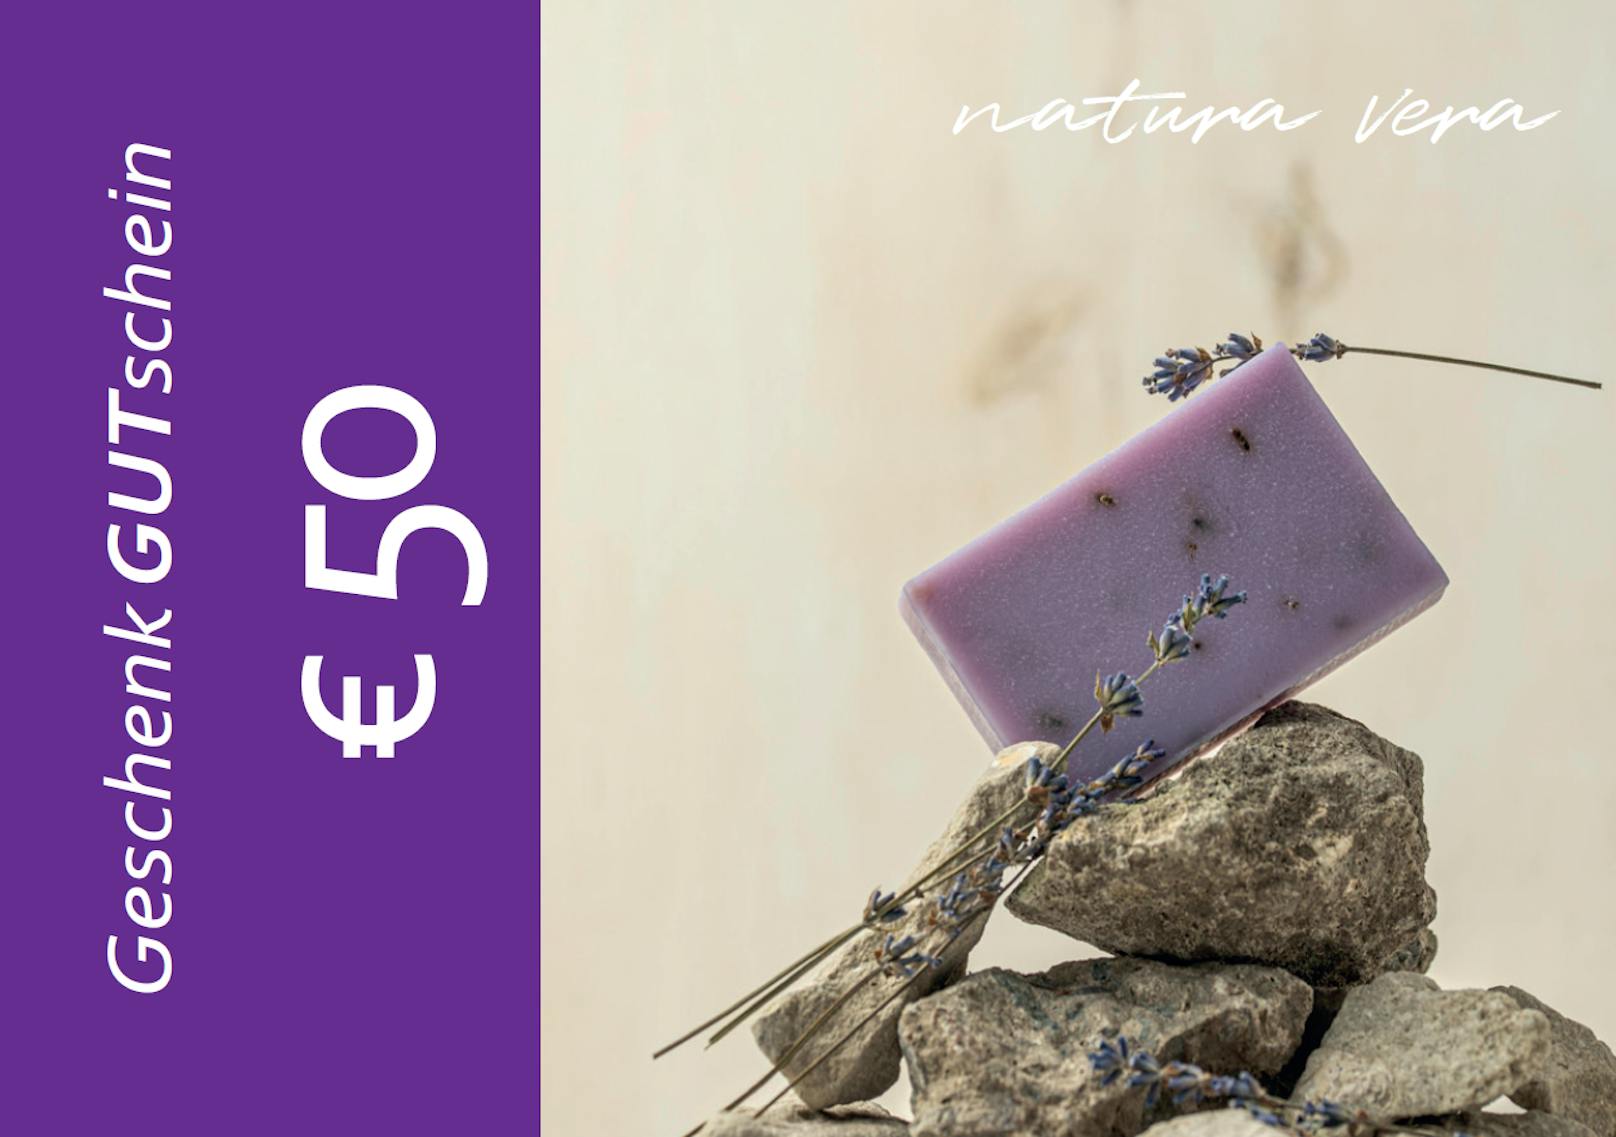 Mitspielen und einen von zehn Frischekosmetik-Gutscheinen von Natura Vera im Wert von € 50 gewinnen!